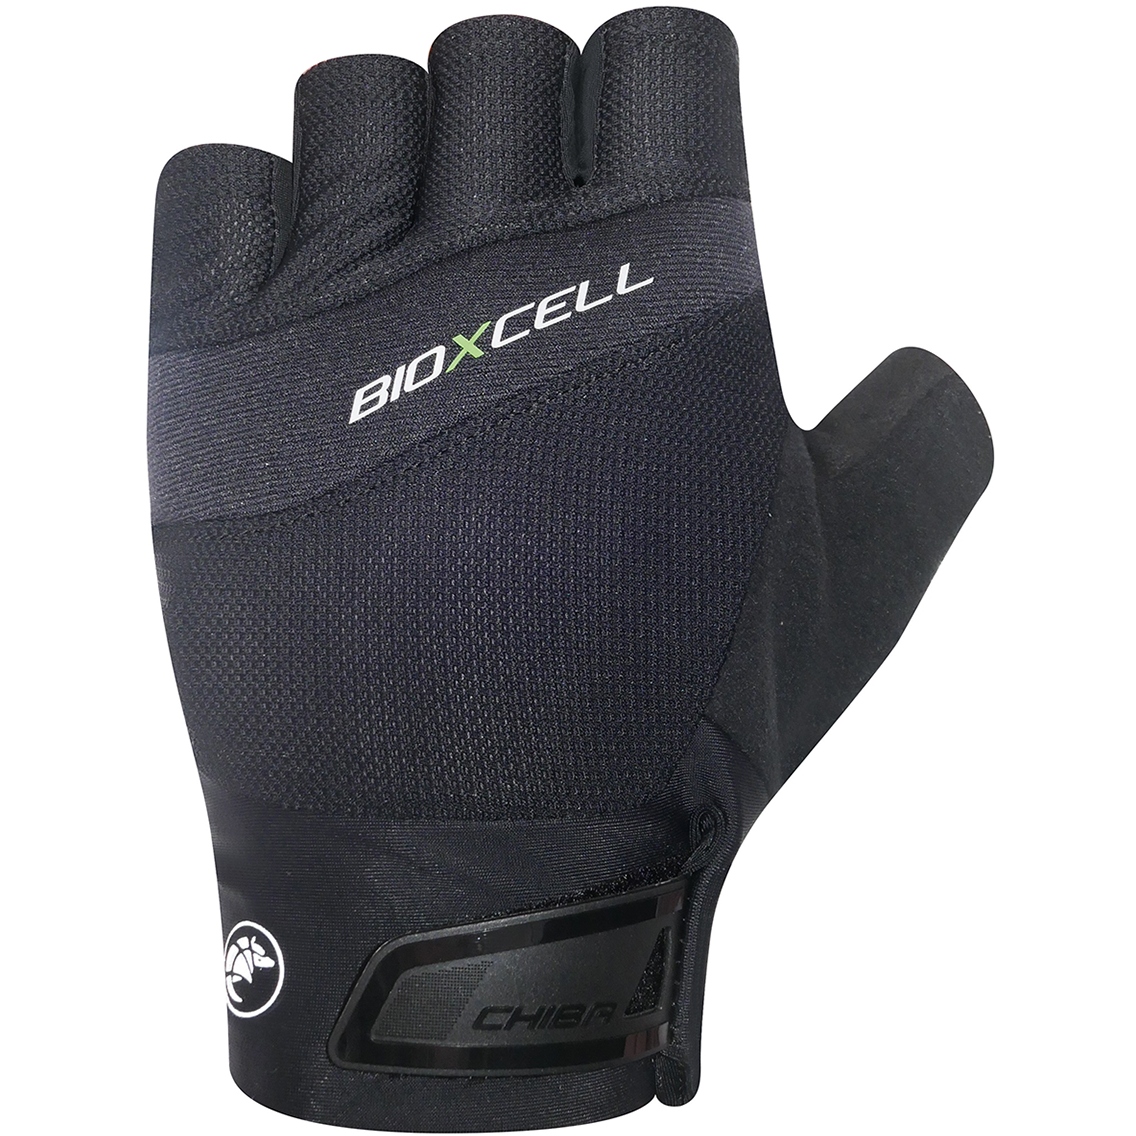 Produktbild von Chiba BioXCell Pro Kurzfinger-Handschuhe - schwarz